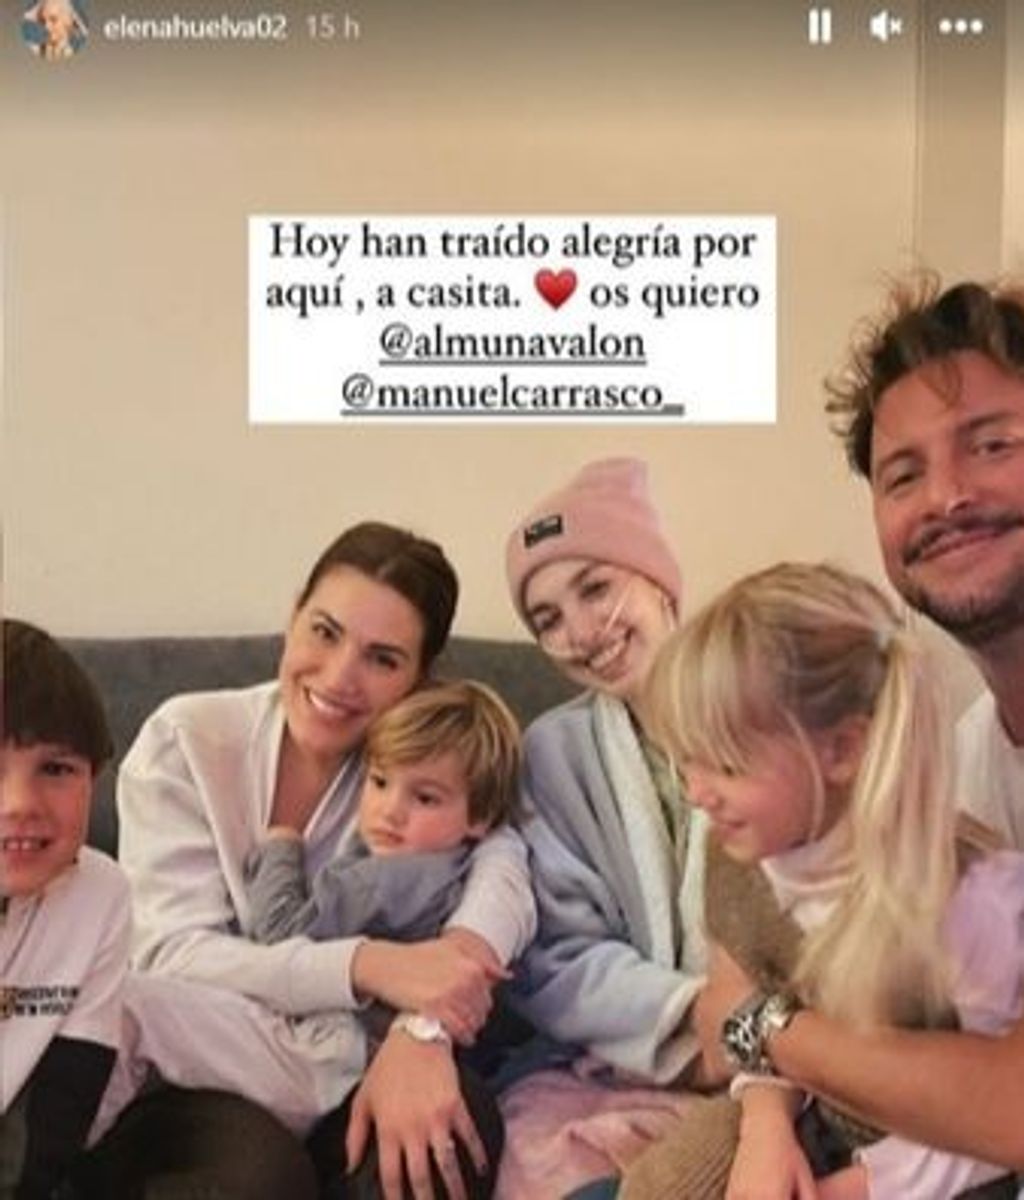 Manuel Carrasco y su familia visitando a Elena Huelva